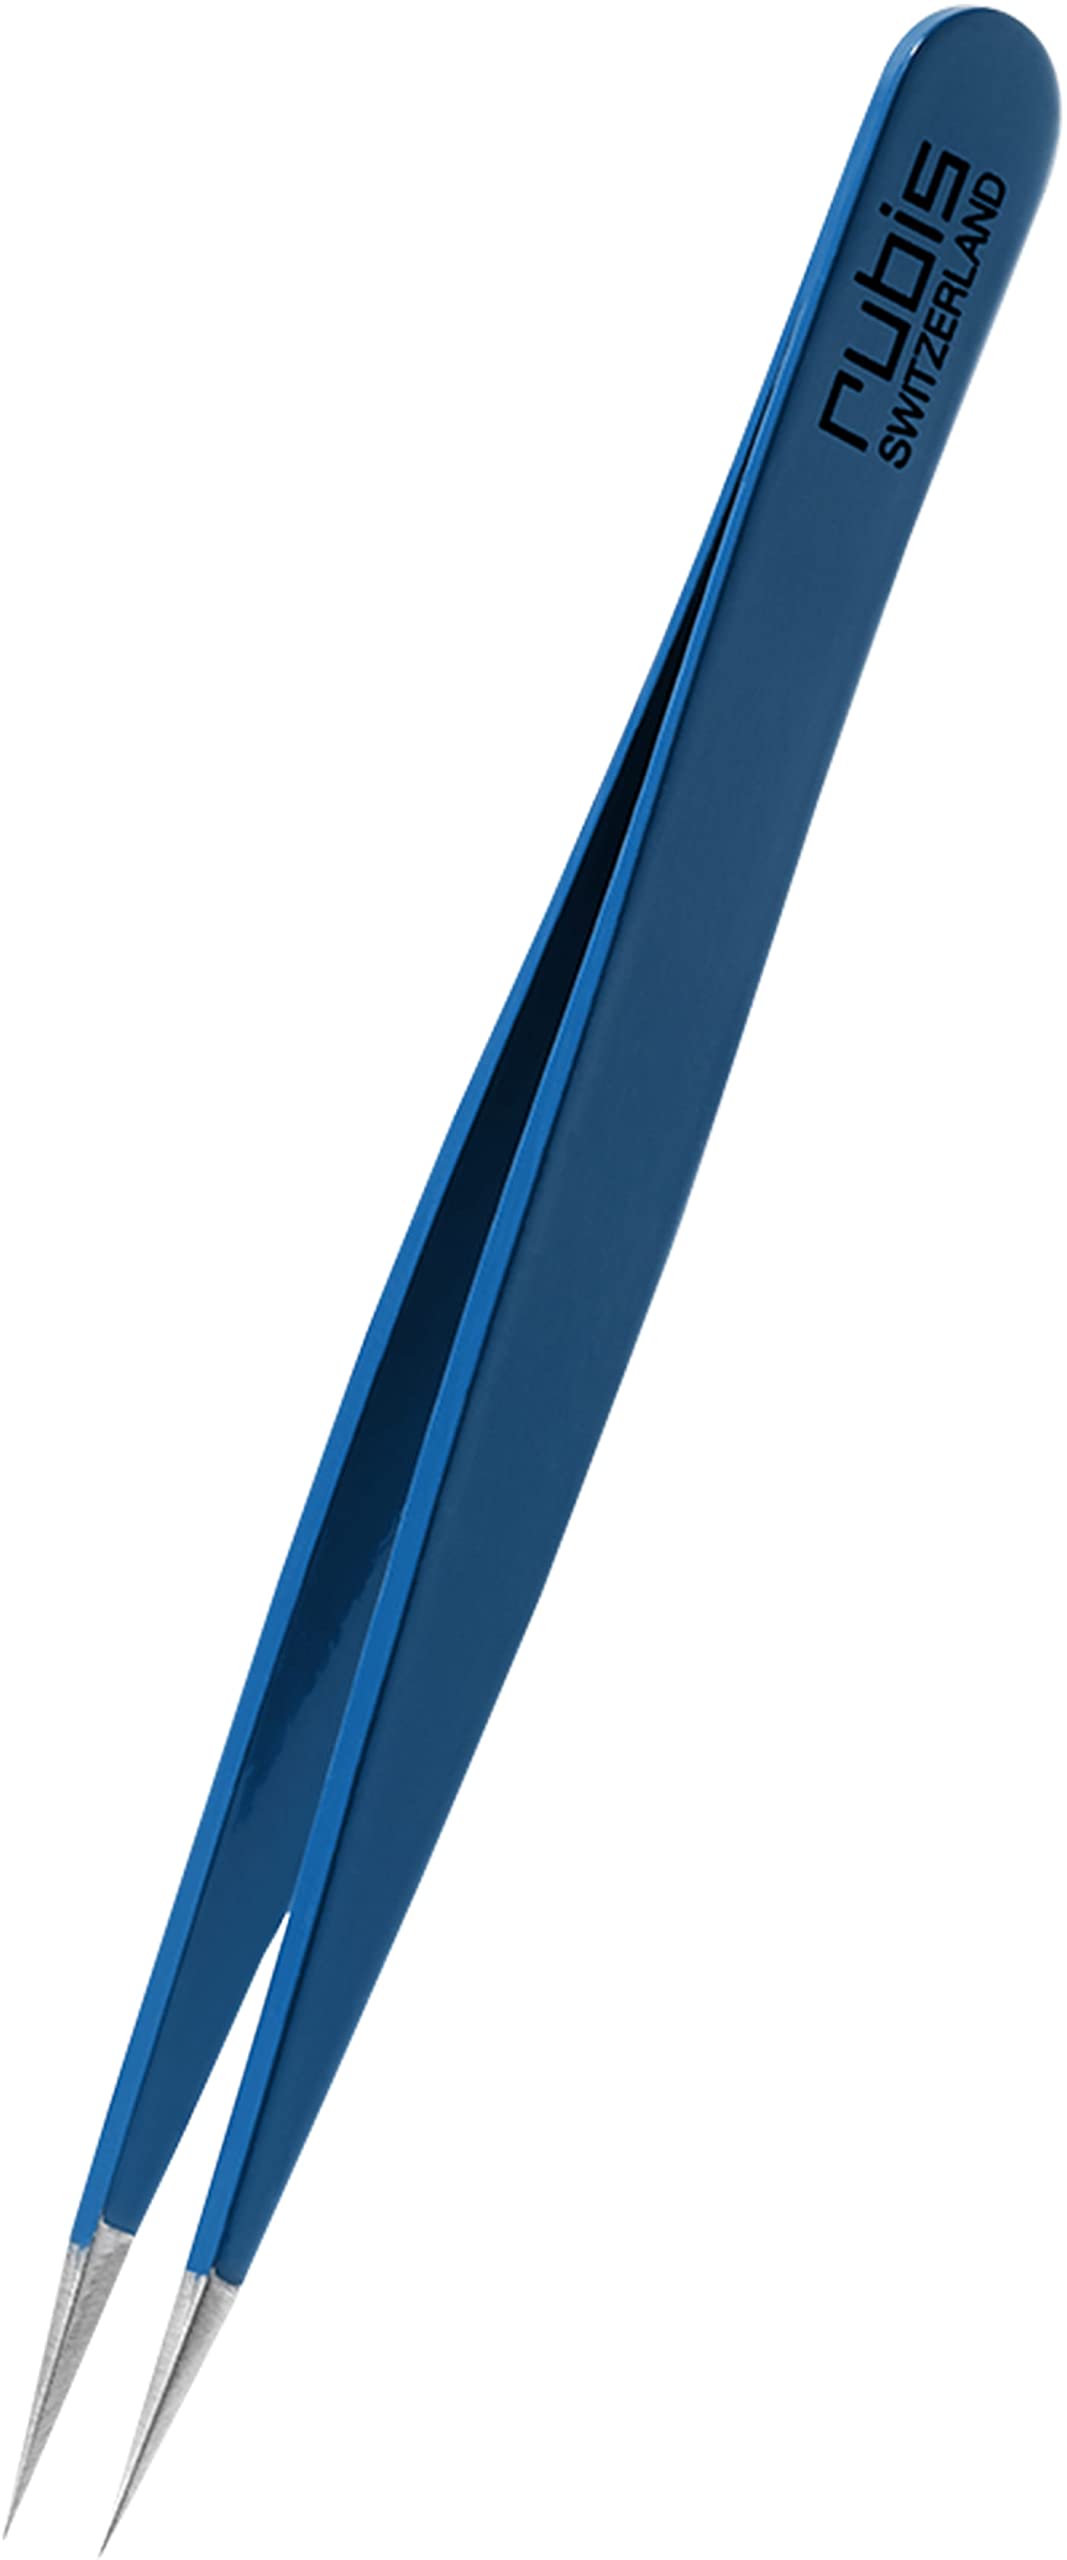 Rubis Splitterpinzette - Spitze Pinzette für Splitter und eingewachsene Haare - Spitzpinzette (Blau)